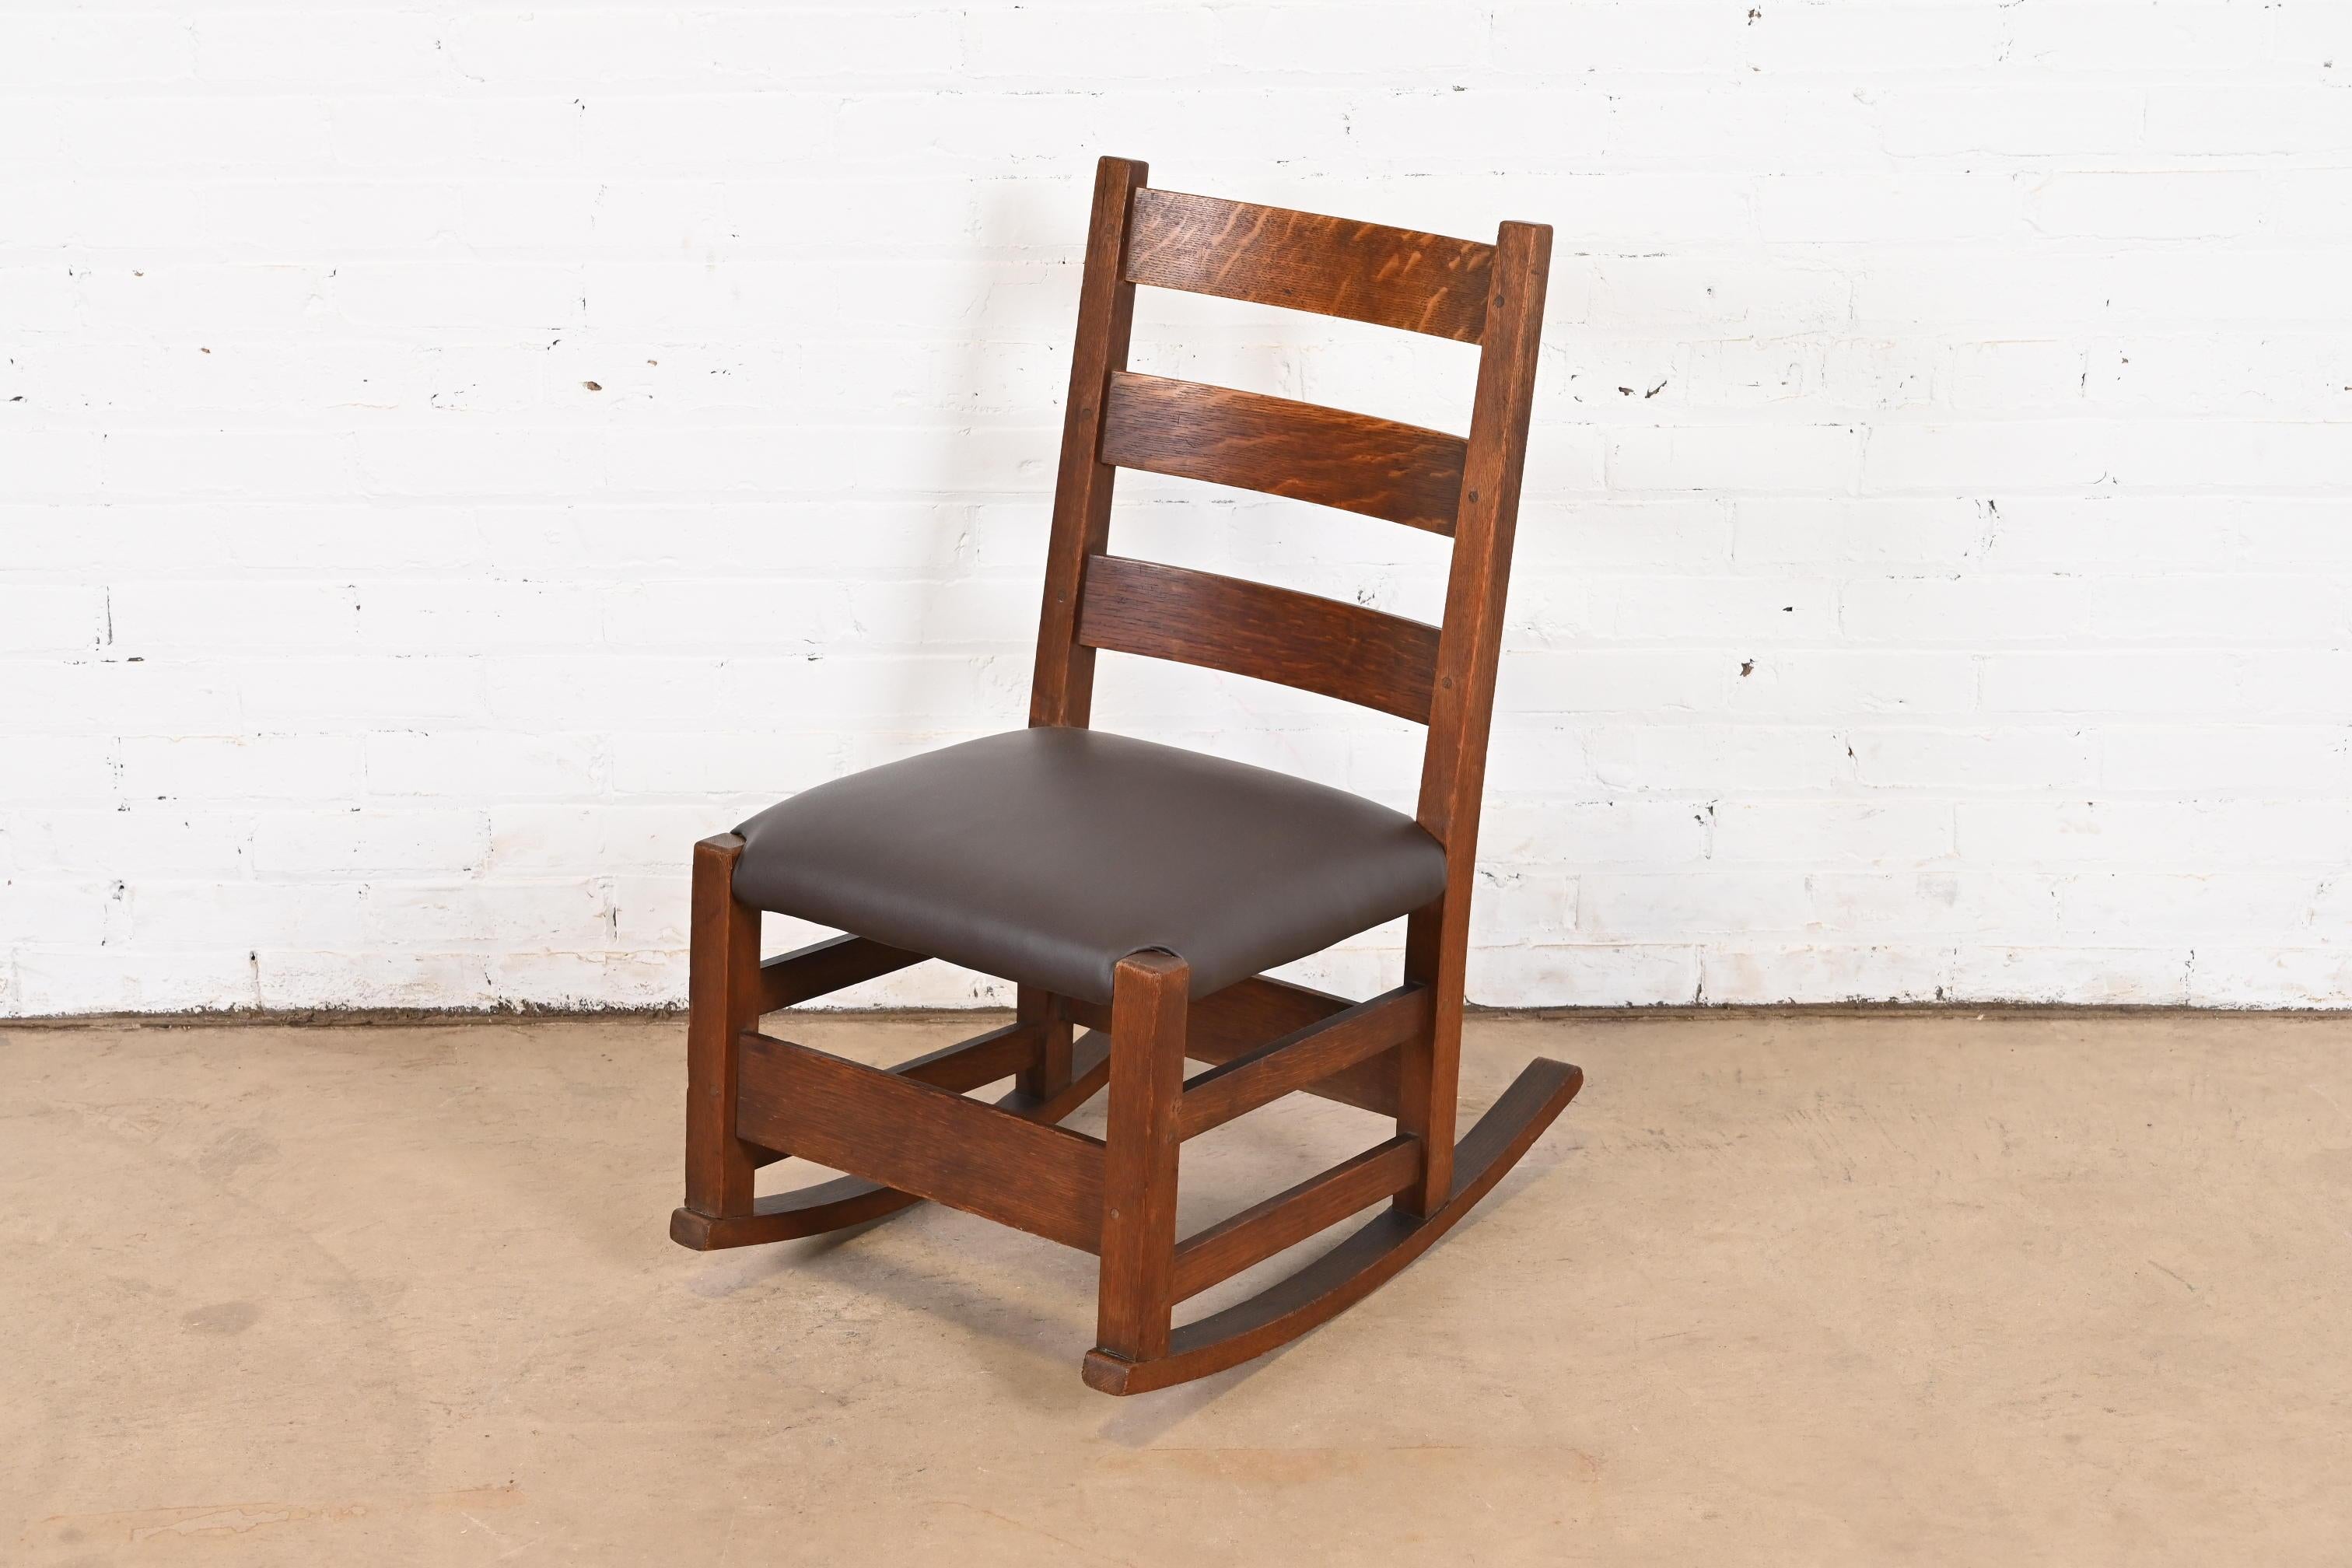 Un magnifique fauteuil de couture ou d'allaitement antique de style Mission ou Arts & Crafts.

Par Gustav Stickley

USA, Circa 1900

Chêne massif scié sur quartier, avec assise en cuir marron.

Dimensions : 17 